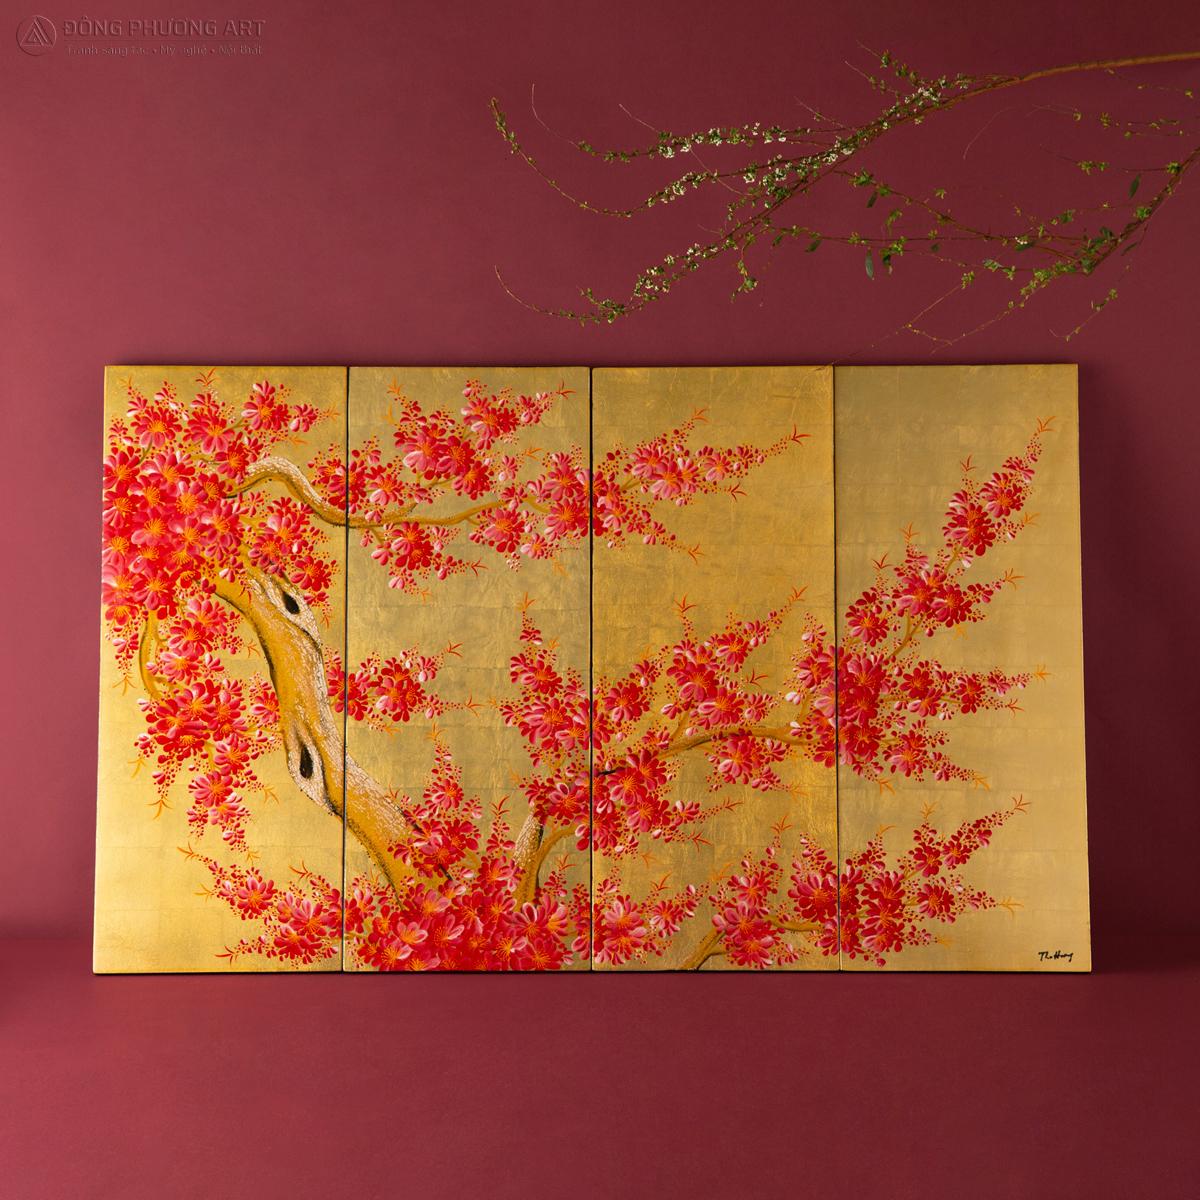 Bức “Hương Xuân” tại Đông Phương Art được thếp vàng cao cấp, là một trong những bức tranh được yêu thích nhất.